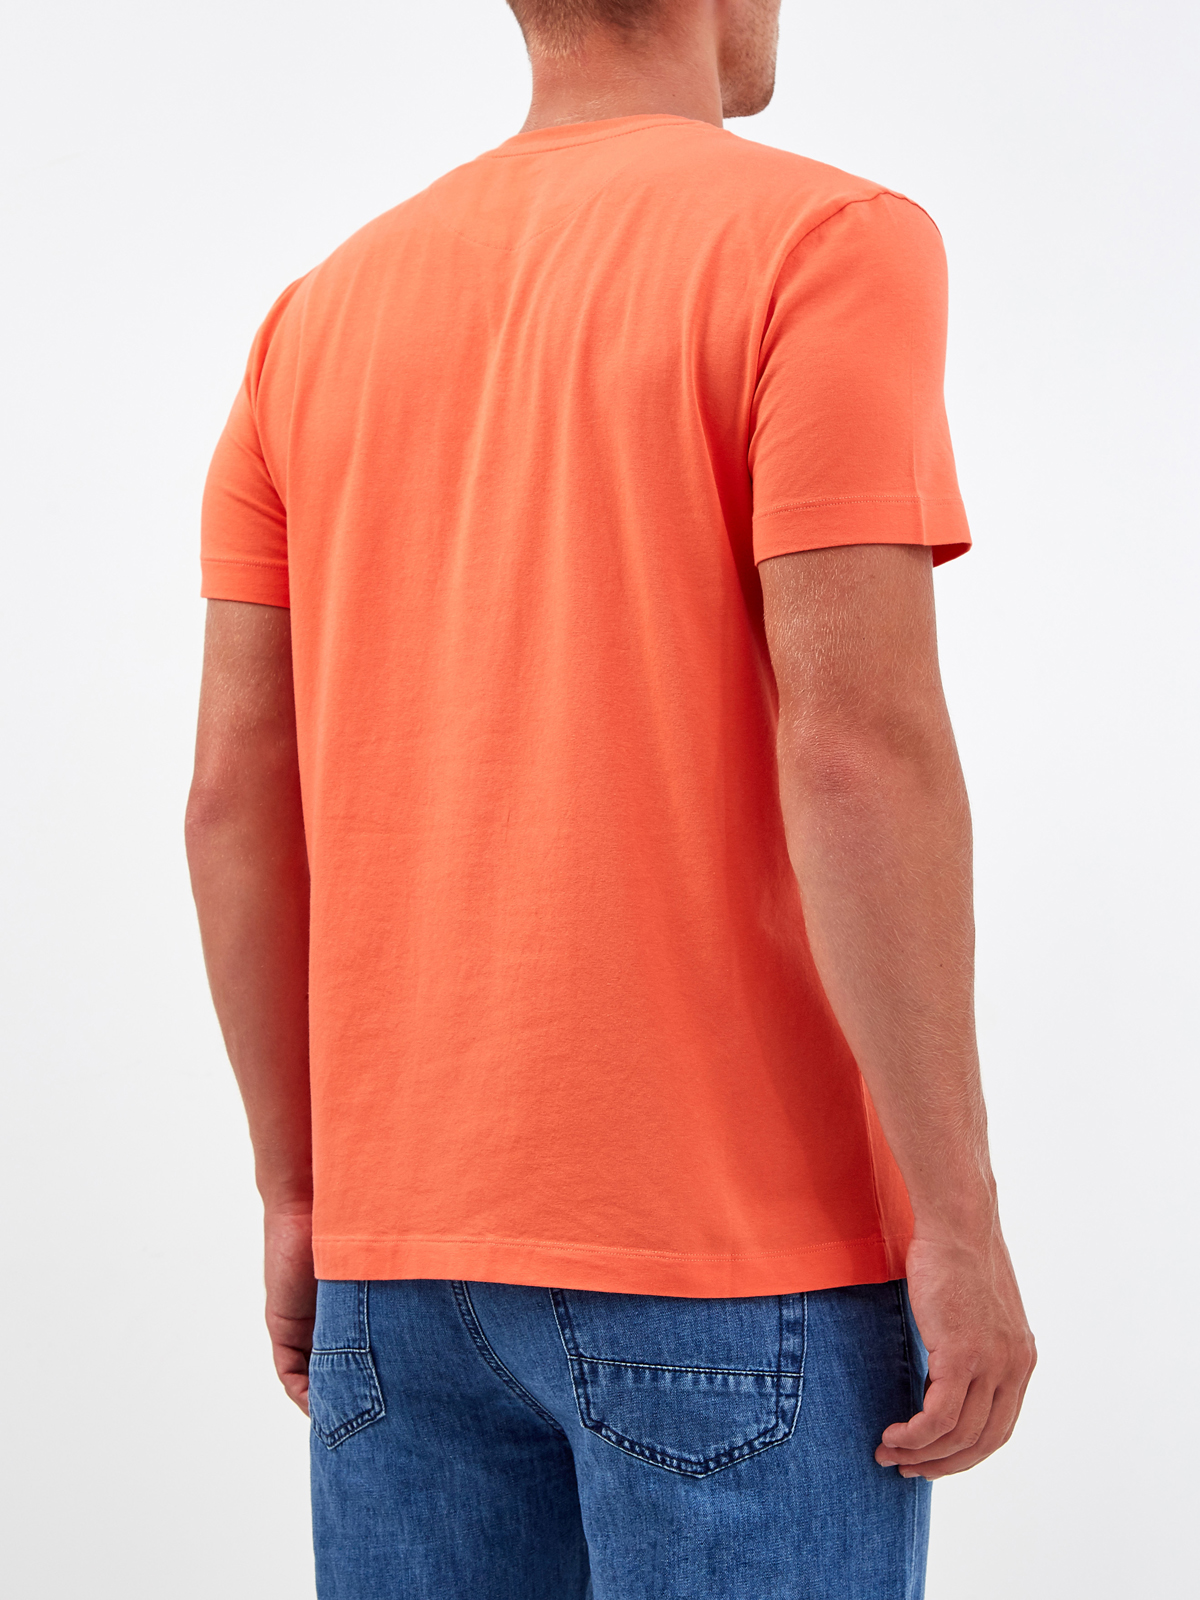 Яркая футболка из хлопка с фактурным логотипом BIKKEMBERGS, цвет оранжевый, размер M;2XL;3XL - фото 4